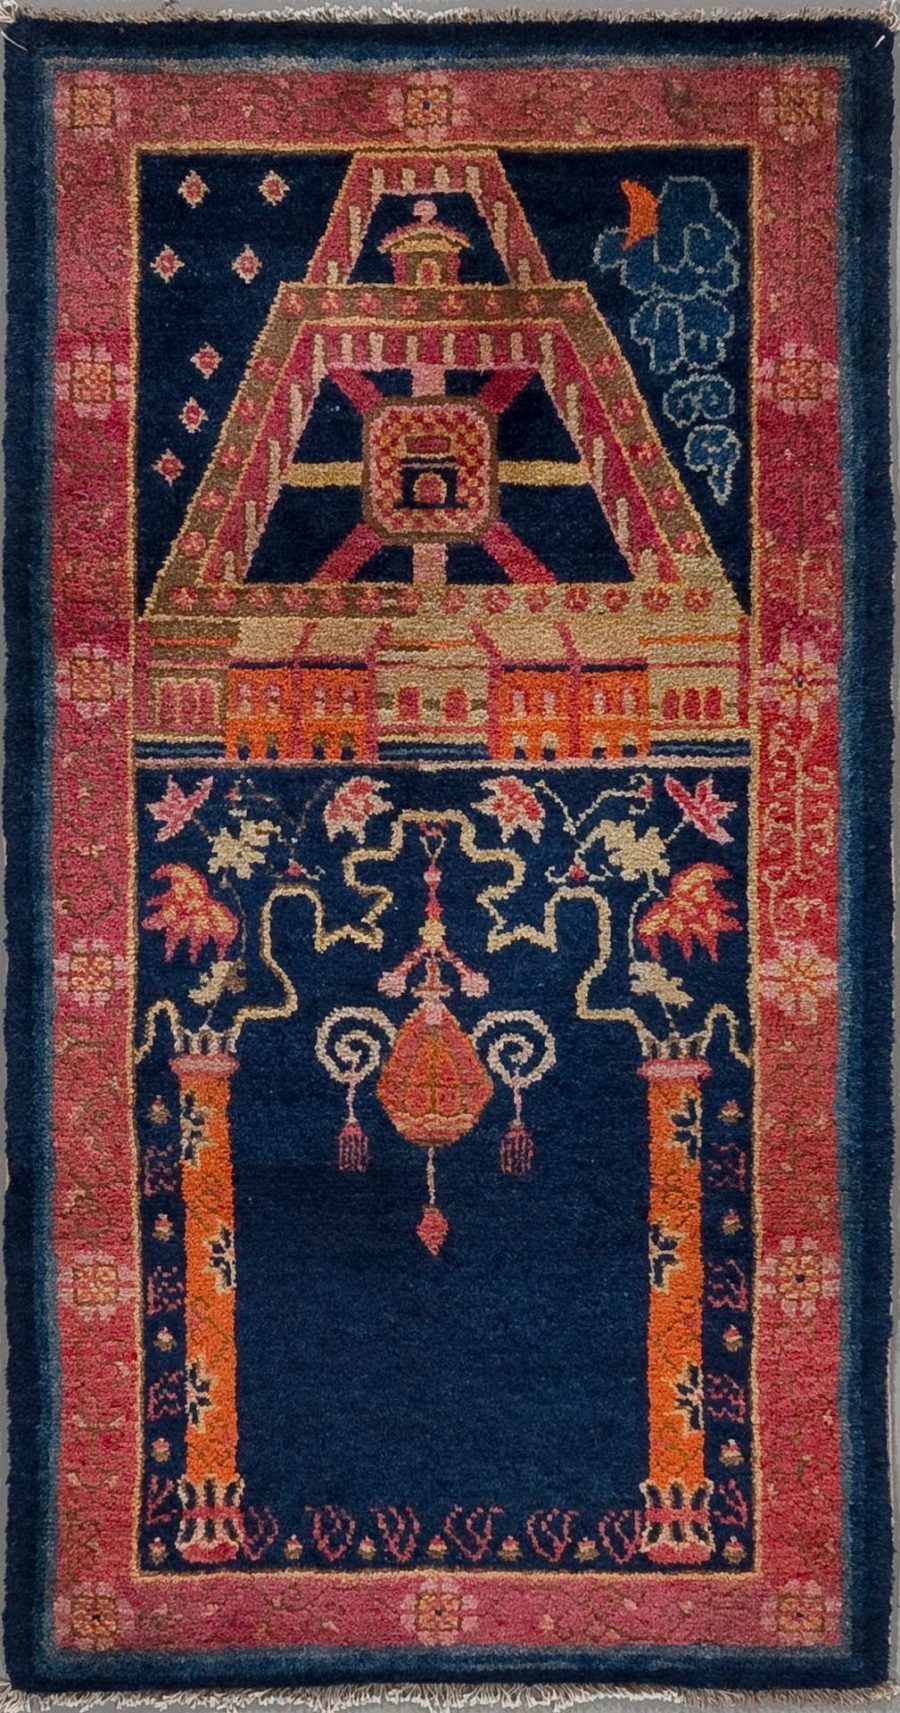 Antiker handgeknüpfter Teppich mit einem persischen Tempelmuster, darstellend einen zentralen Kronleuchter, flankiert von Vasen und Blumenmotiven auf einem dunkelblauen Hintergrund und umrahmt von einem geometrisch gemusterten Rand in Pink, Orange und Cremetönen.